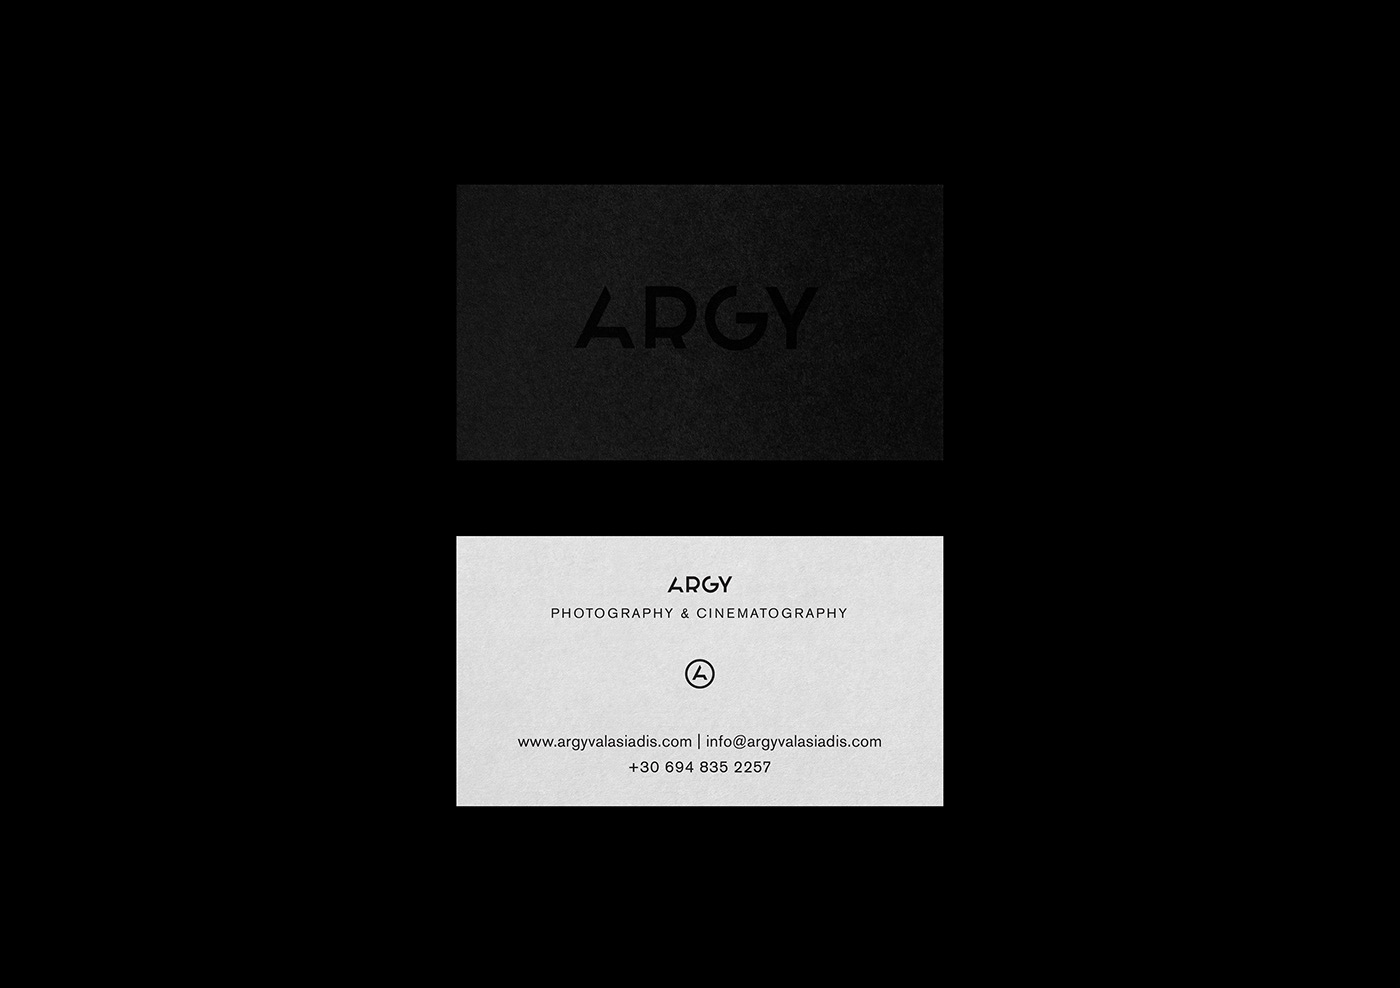 argy cinematography Photography  Webdesign Website identity